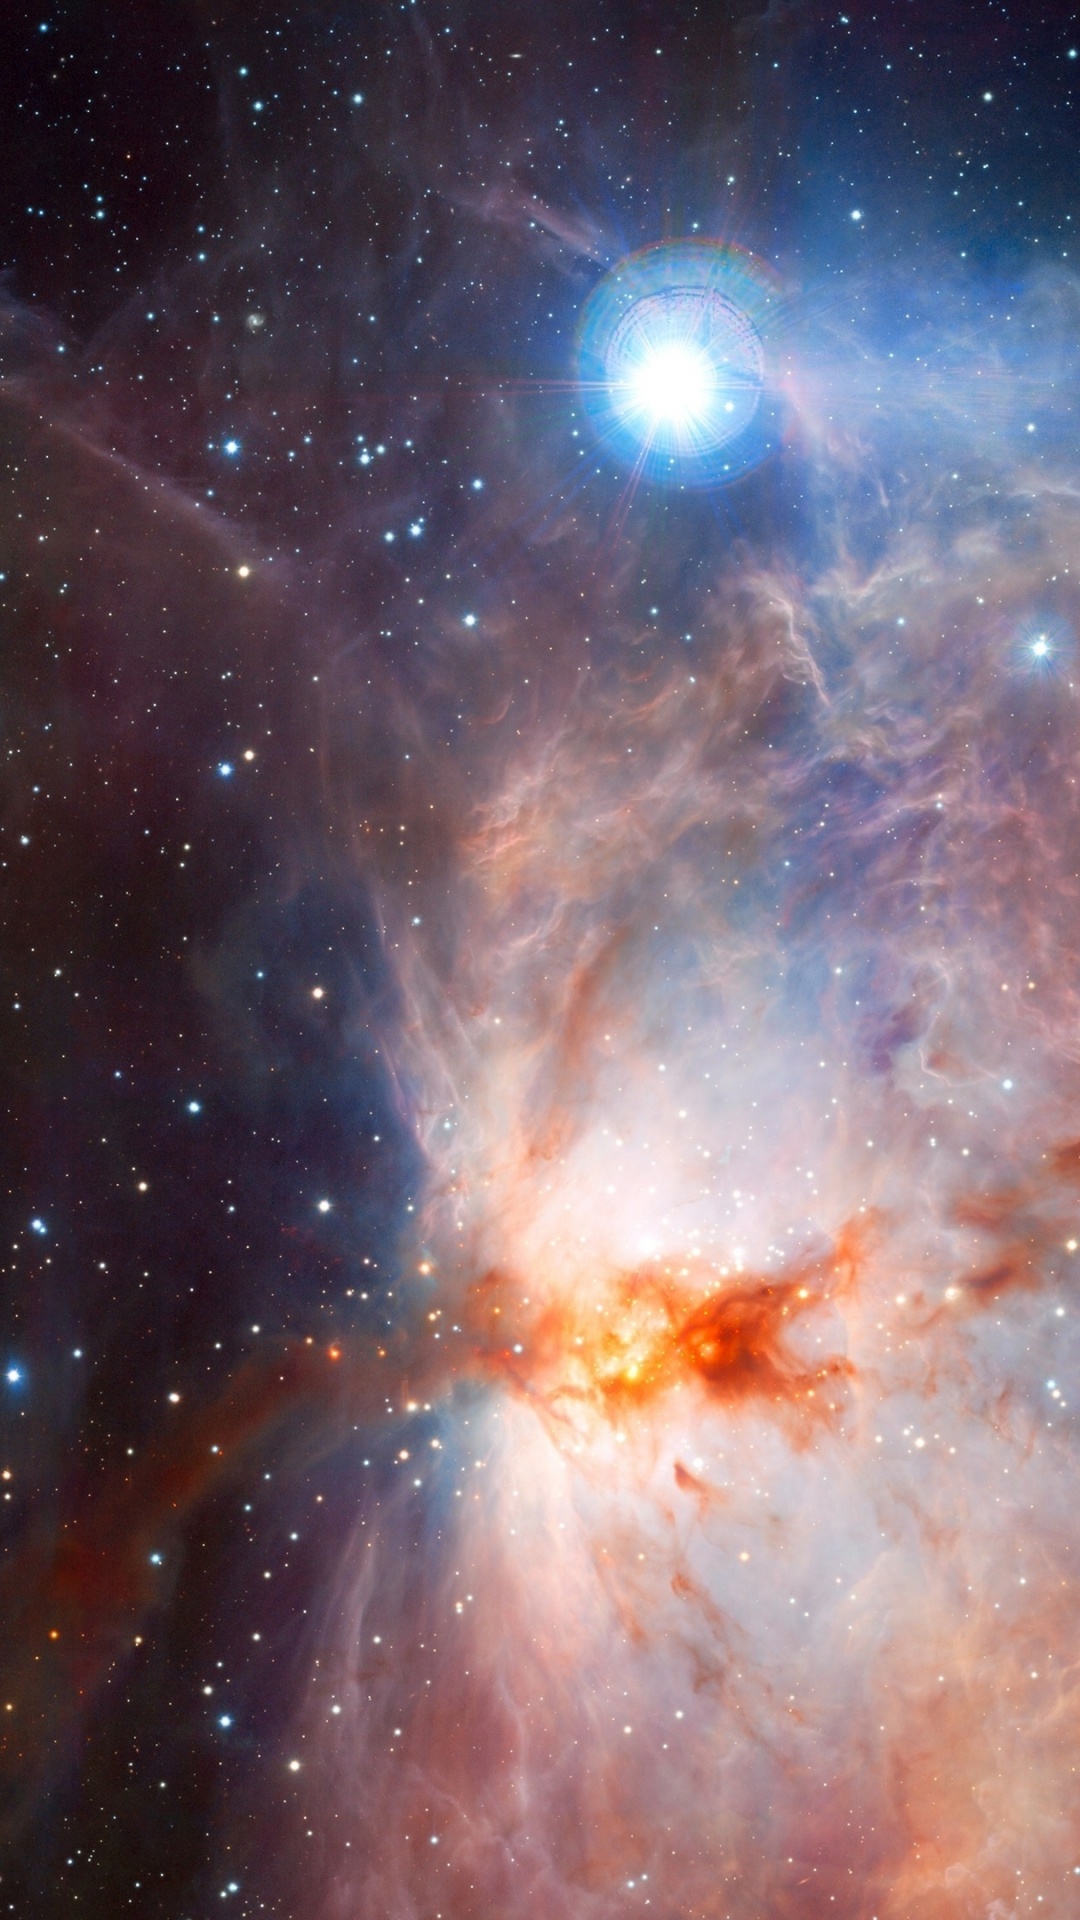 猎户座星云, 明星, 天文学, 天文学对象, 外层空间 壁纸 1080x1920 允许